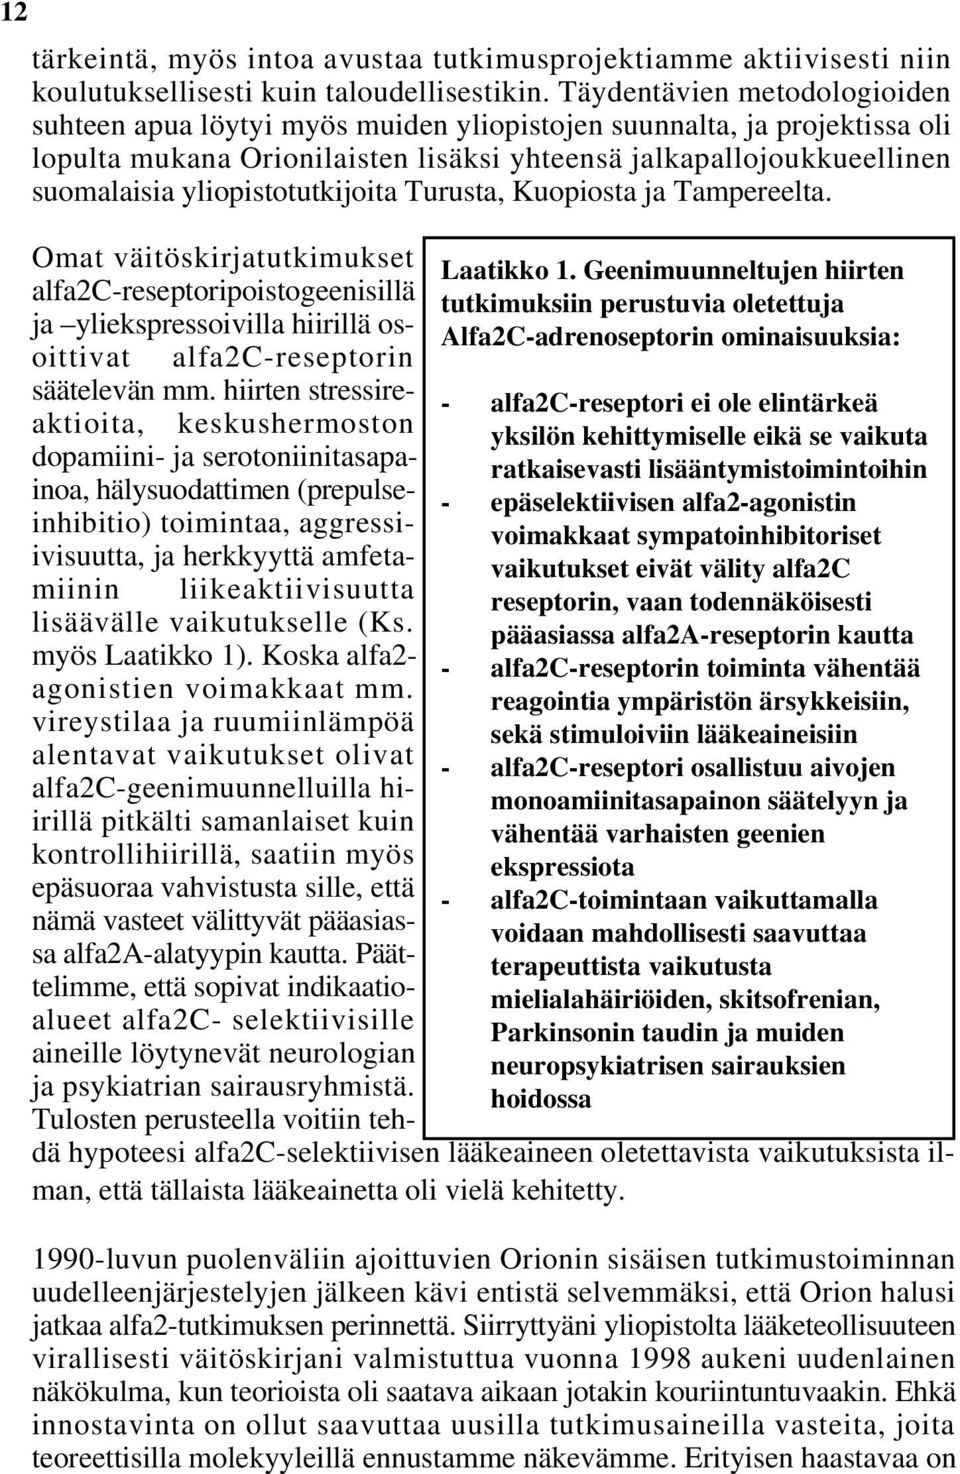 yliopistotutkijoita Turusta, Kuopiosta ja Tampereelta. Omat väitöskirjatutkimukset alfa2c-reseptoripoistogeenisillä ja yliekspressoivilla hiirillä osoittivat alfa2c-reseptorin säätelevän mm.